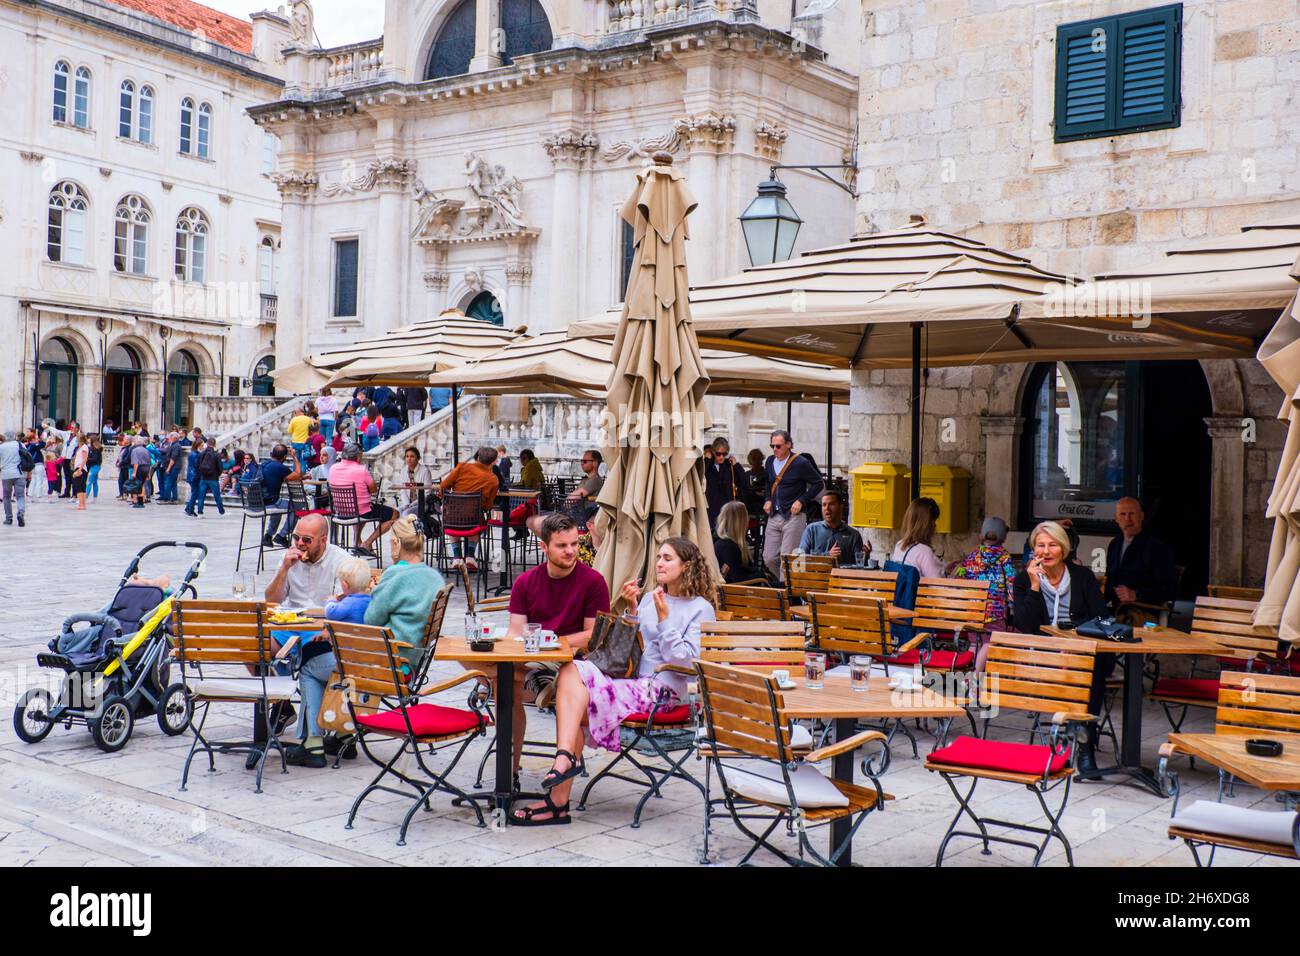 Terrasse de café, place Luza, Grad, vieille ville, Dubrovnik,Croatie Banque D'Images